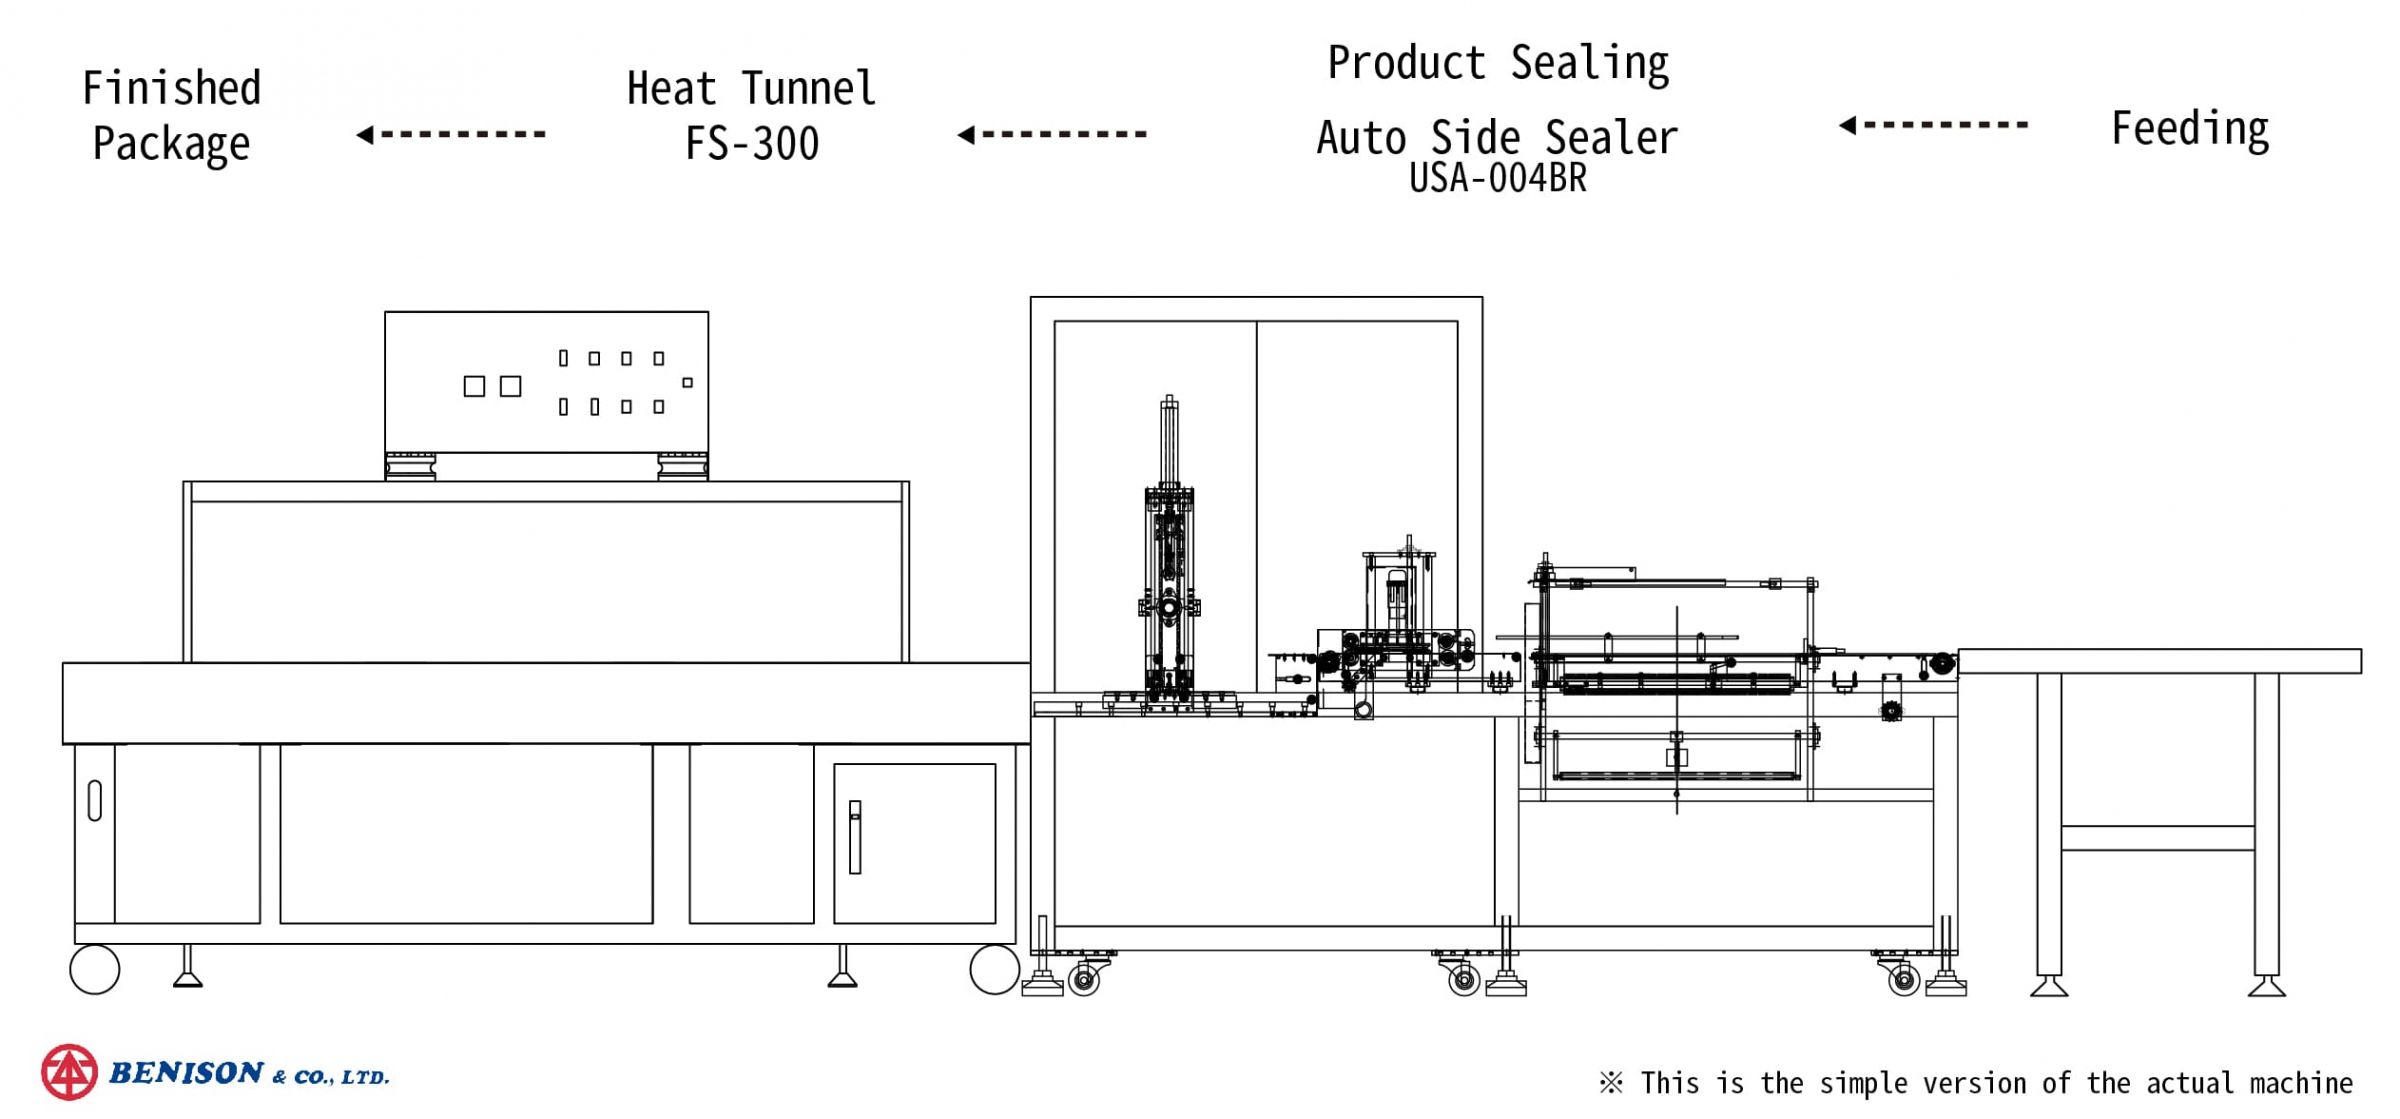 Sellador lateral automático con túnel de retracción de calor para la planificación de soluciones de productos alimenticios funcionales